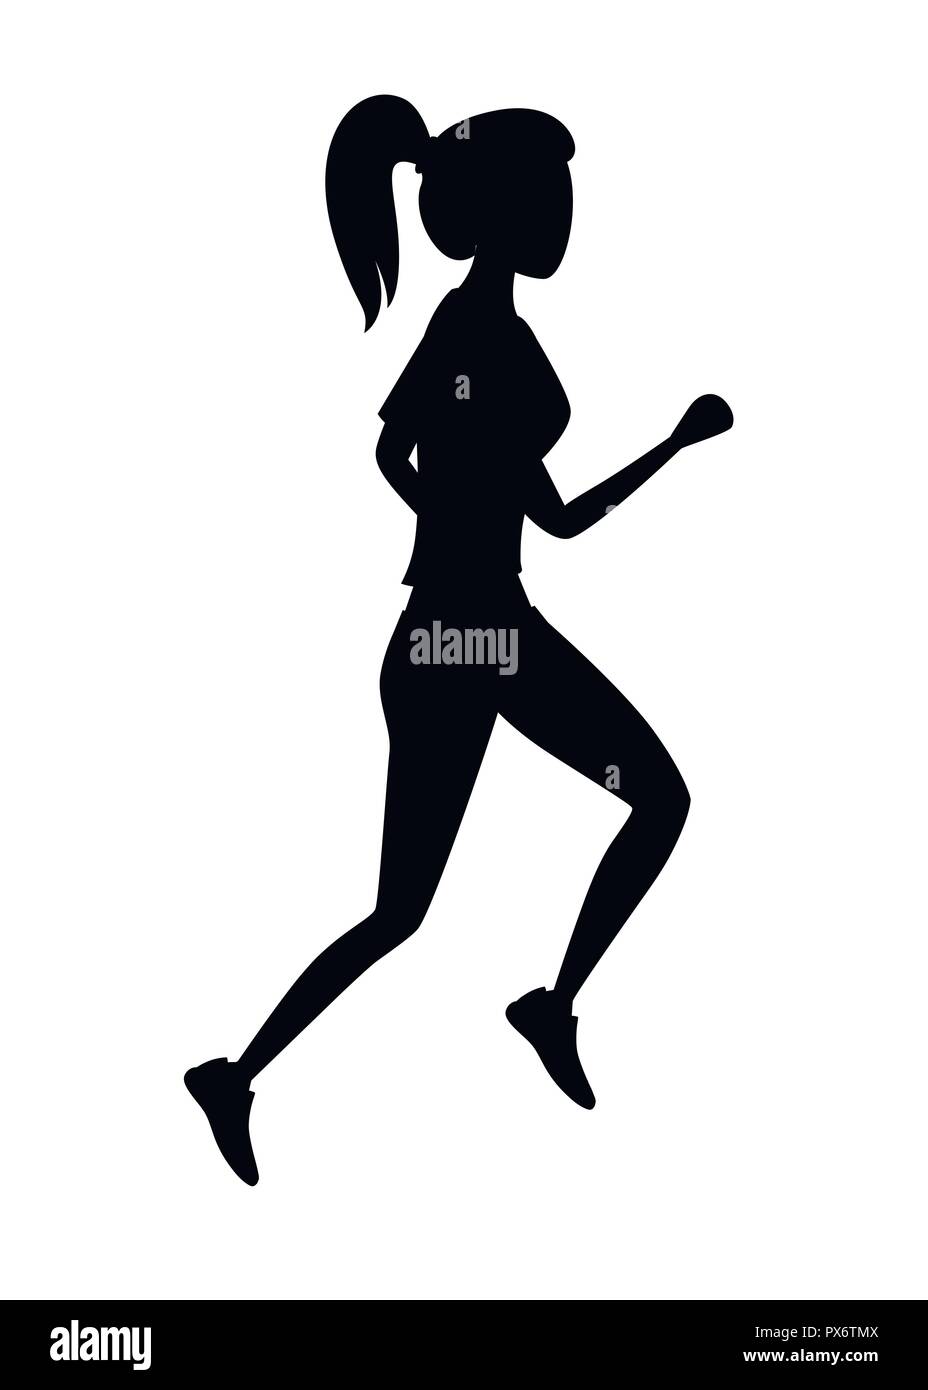 Schwarze Silhouette. Frauen im Sport Laufbekleidung. Kein Gesicht Cartoon Character Design. Flache Vector Illustration auf weißem Hintergrund. Stock Vektor